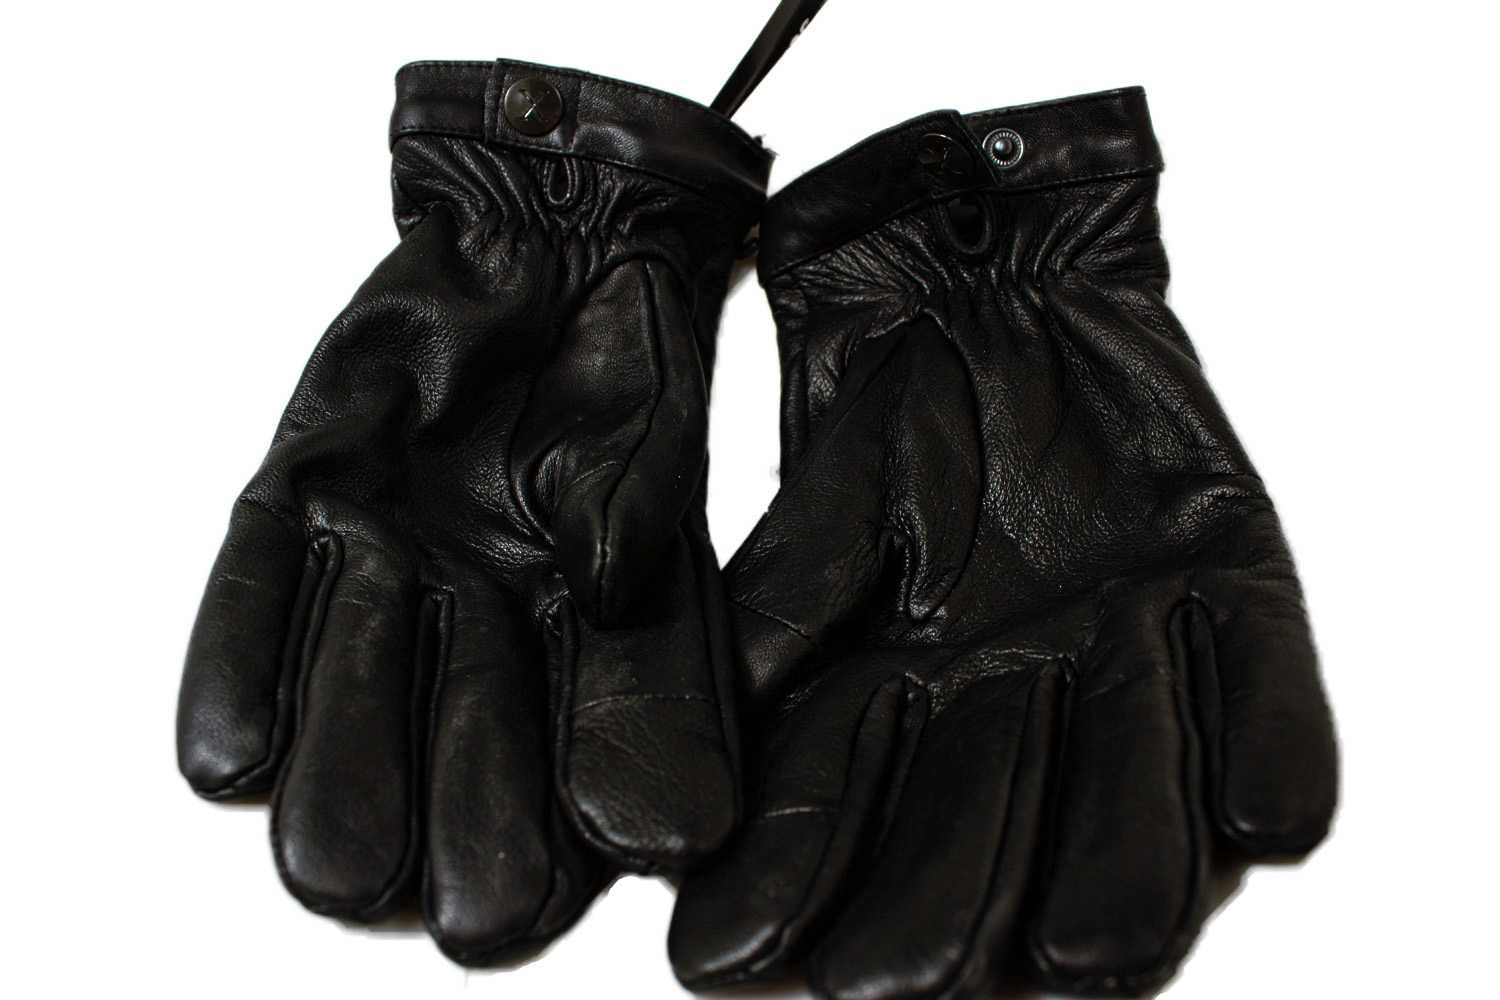 Nowe Czarne rękawiczki skórzane skóra naturalna męskie eleganckie USA